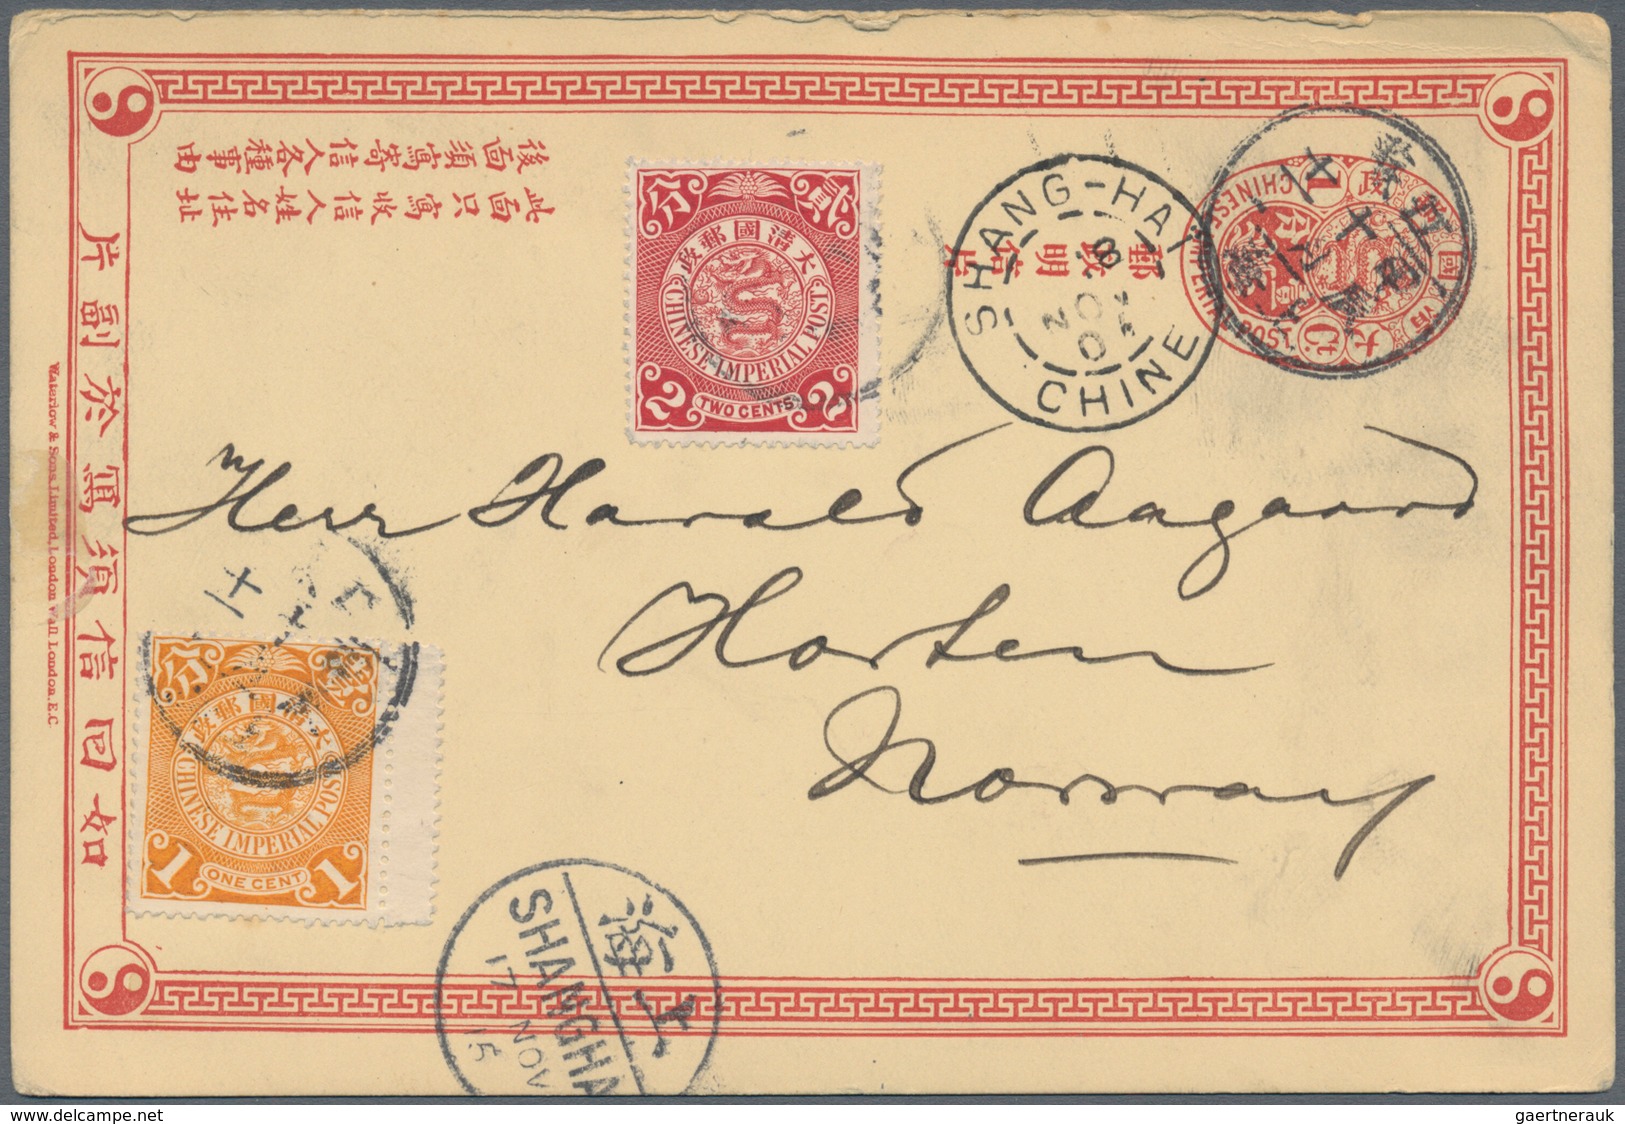 08202 China - Ganzsachen: 1898, CIP 1 C. Message Part, Uprated Coiling Dragon 1 C. (interpanneau Copy), 2 - Cartes Postales